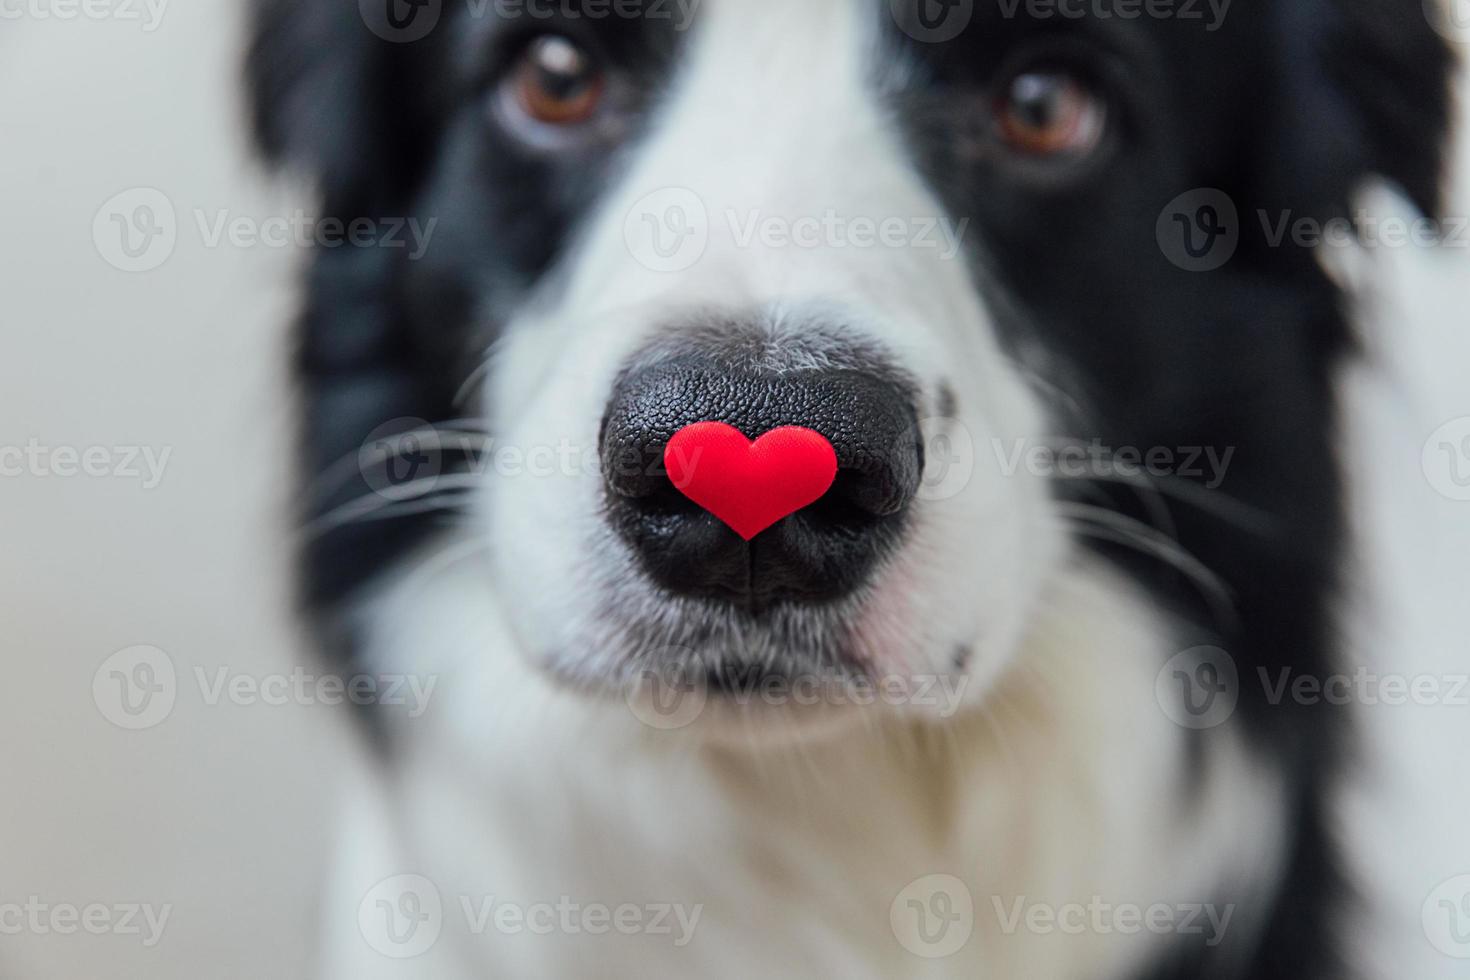 st. Valentijnsdag concept. grappige portret schattige puppy hondje border collie rood hart houden op neus geïsoleerd op een witte achtergrond, close-up. mooie hond verliefd op Valentijnsdag geeft cadeau. foto